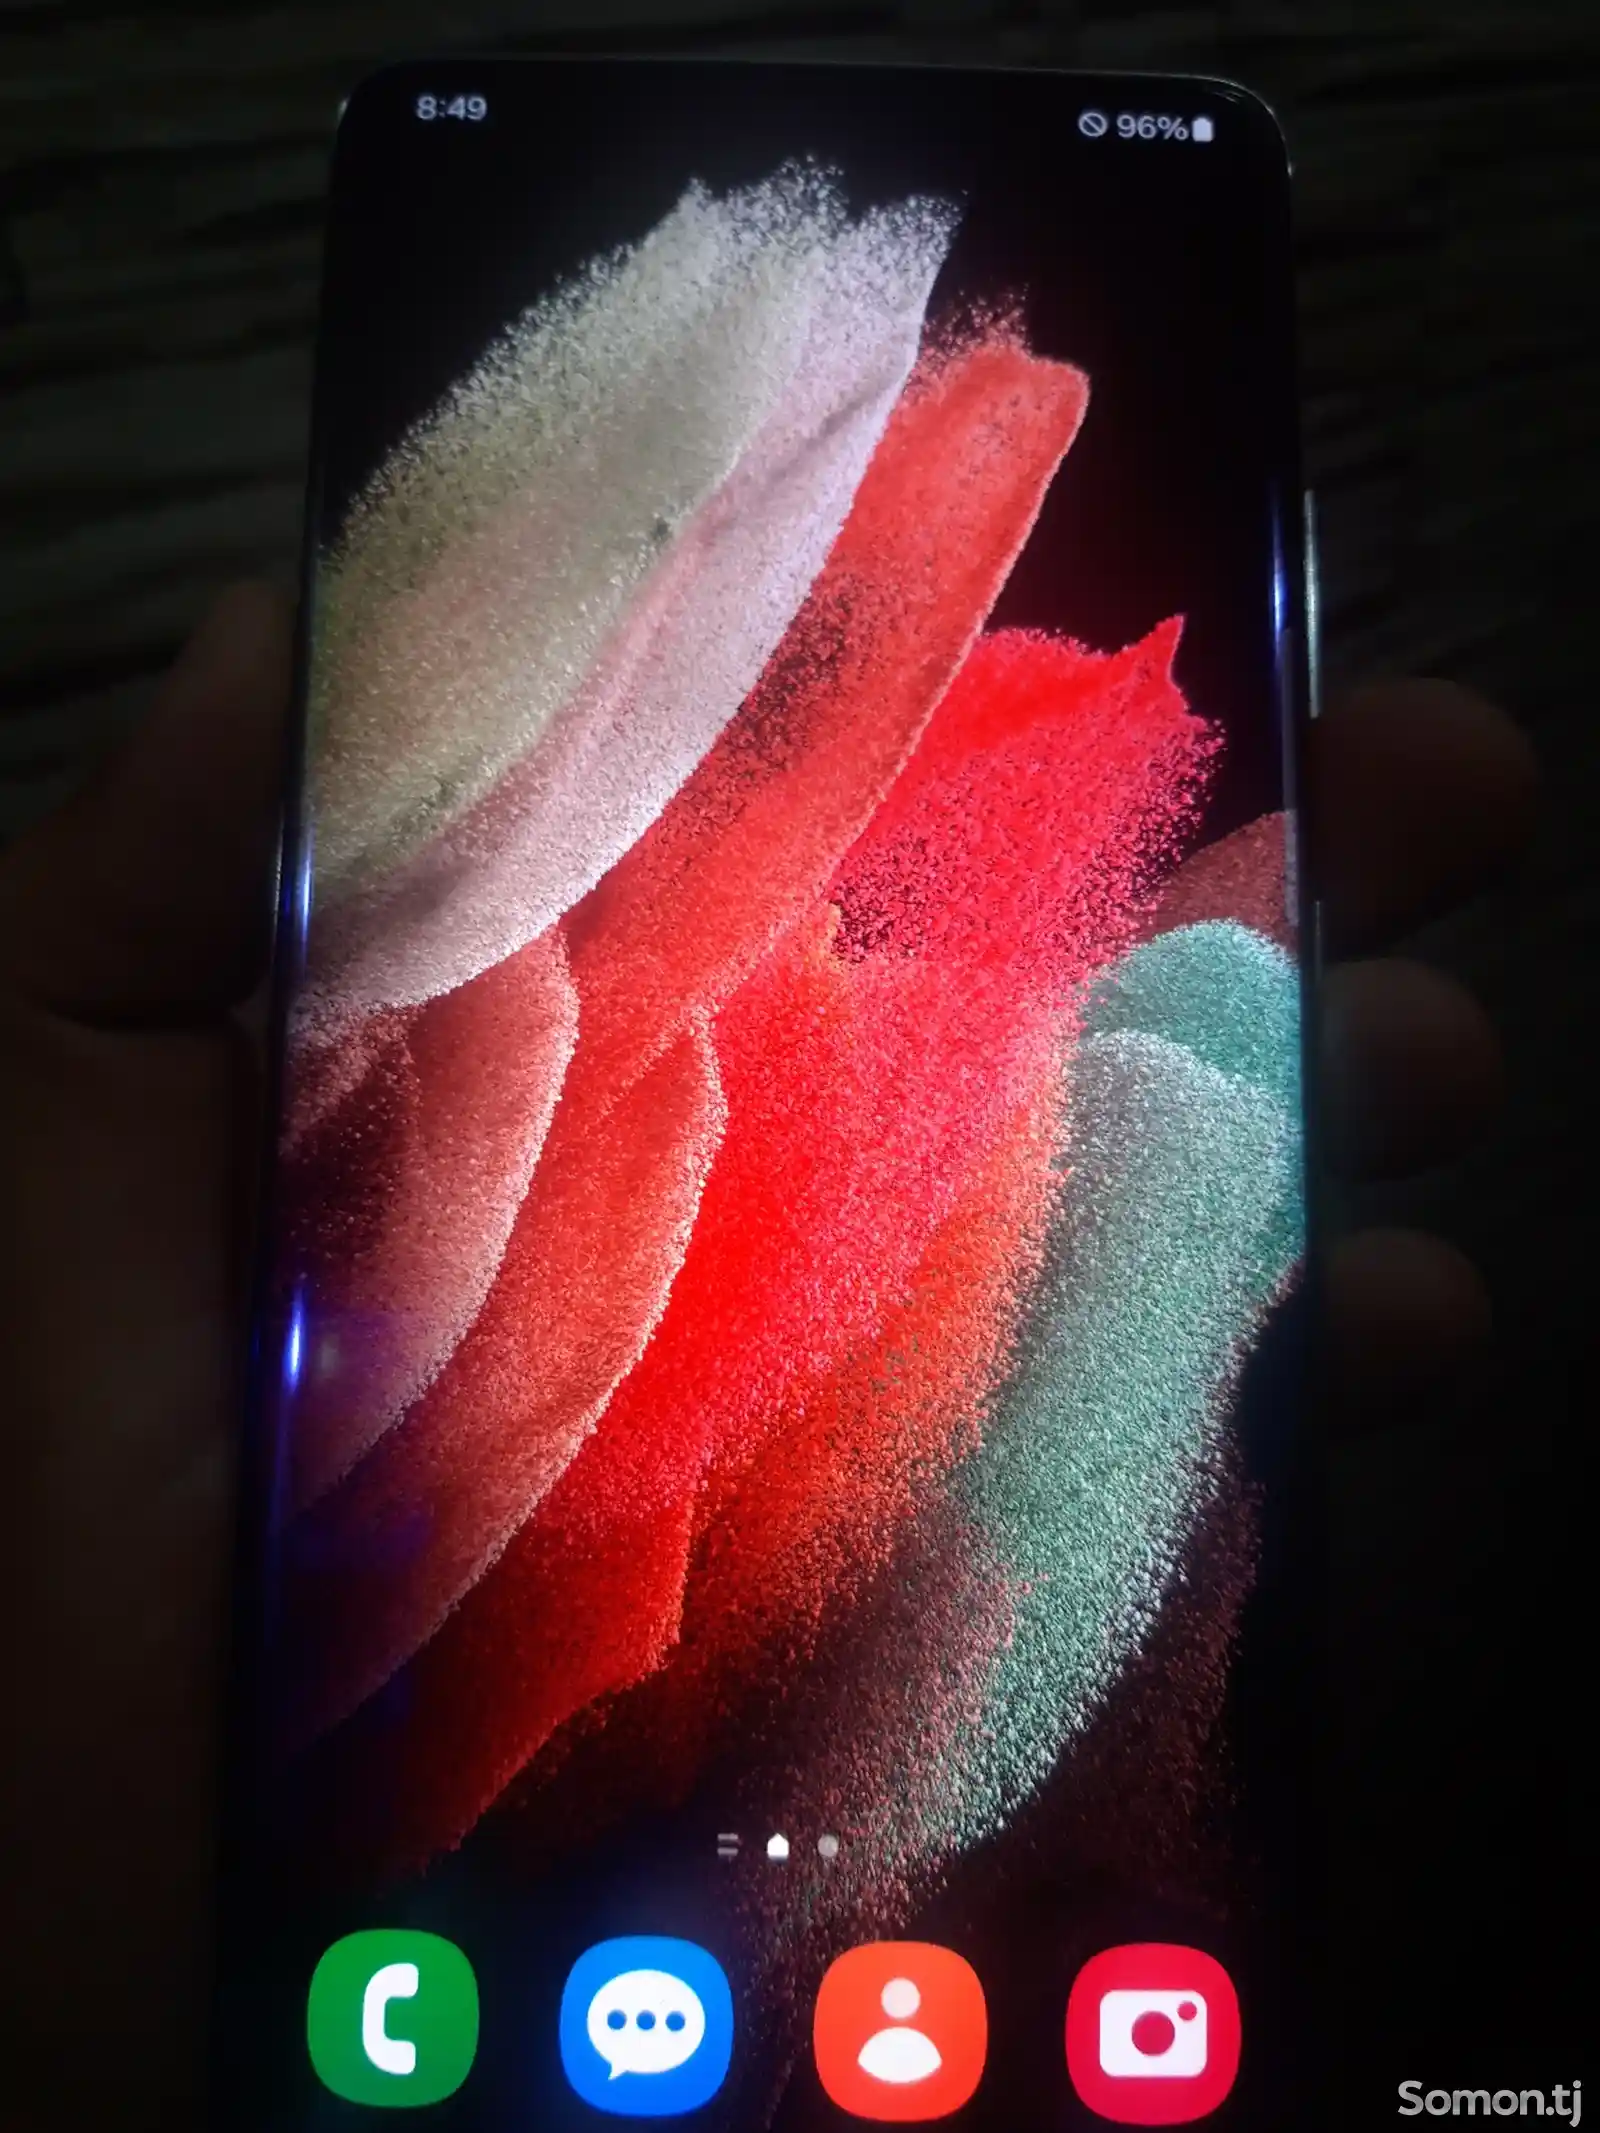 Samsung Galaxy S21 Ultra-2